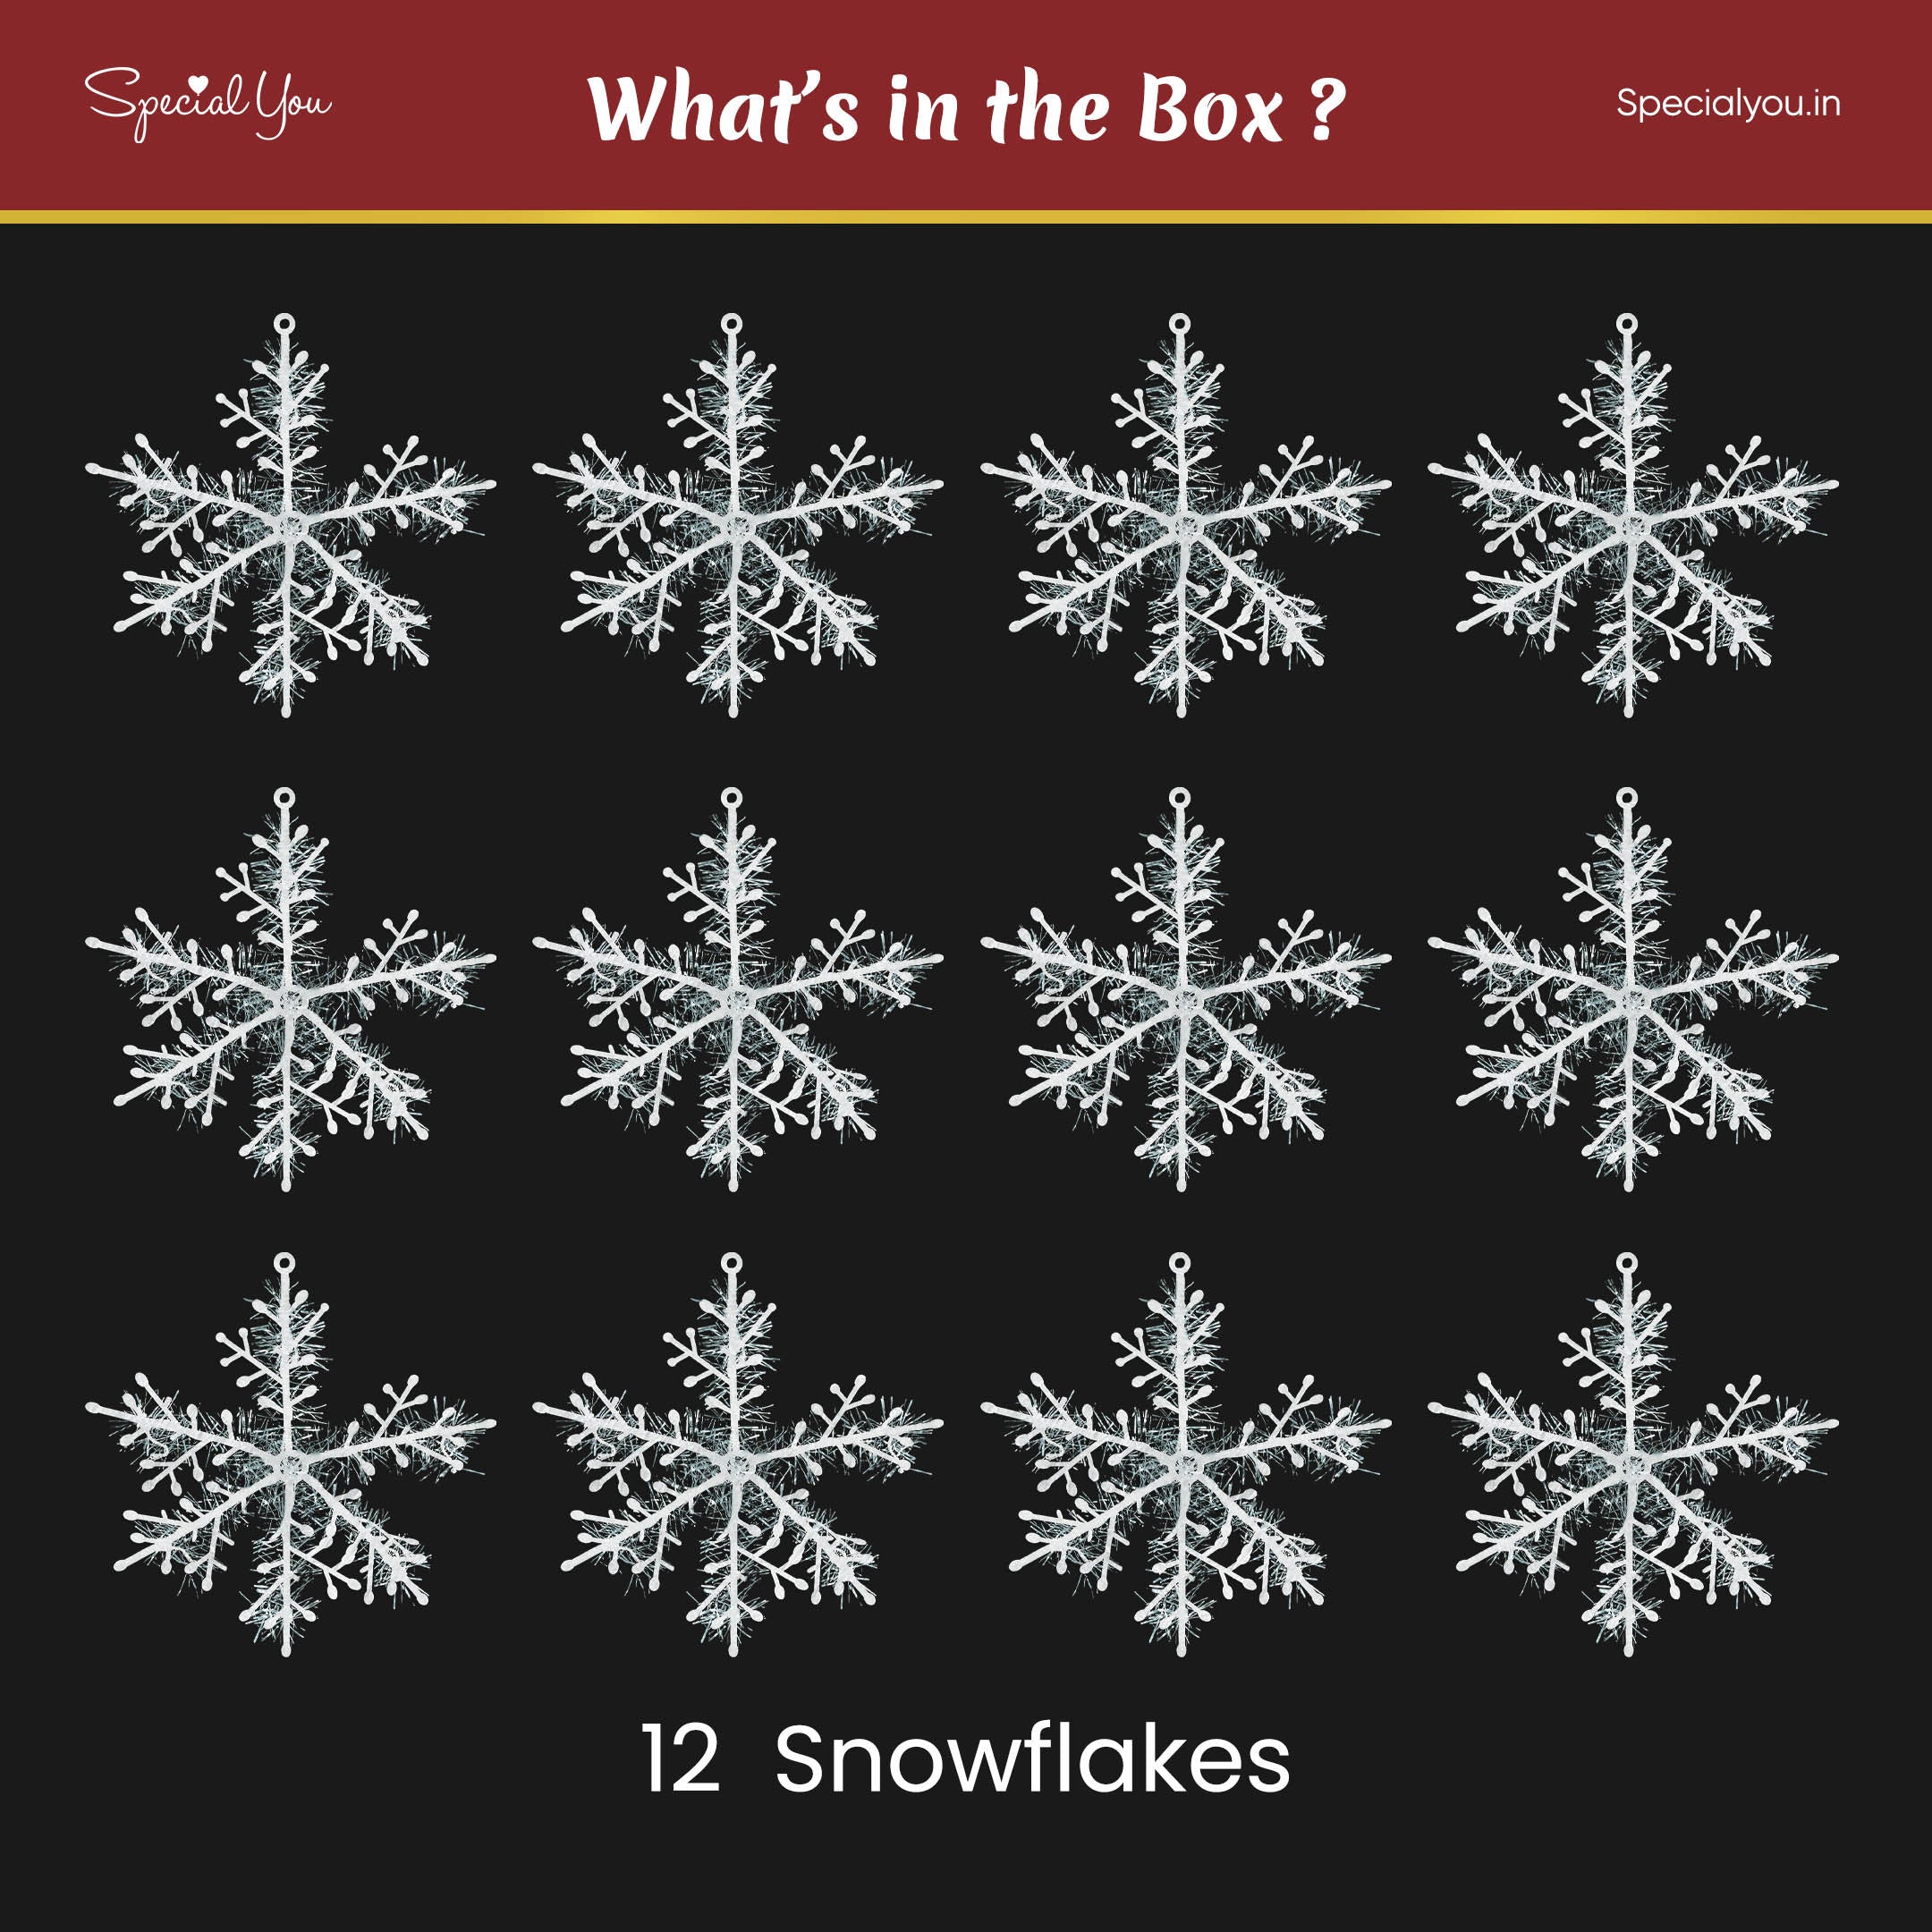 12 snowflakes